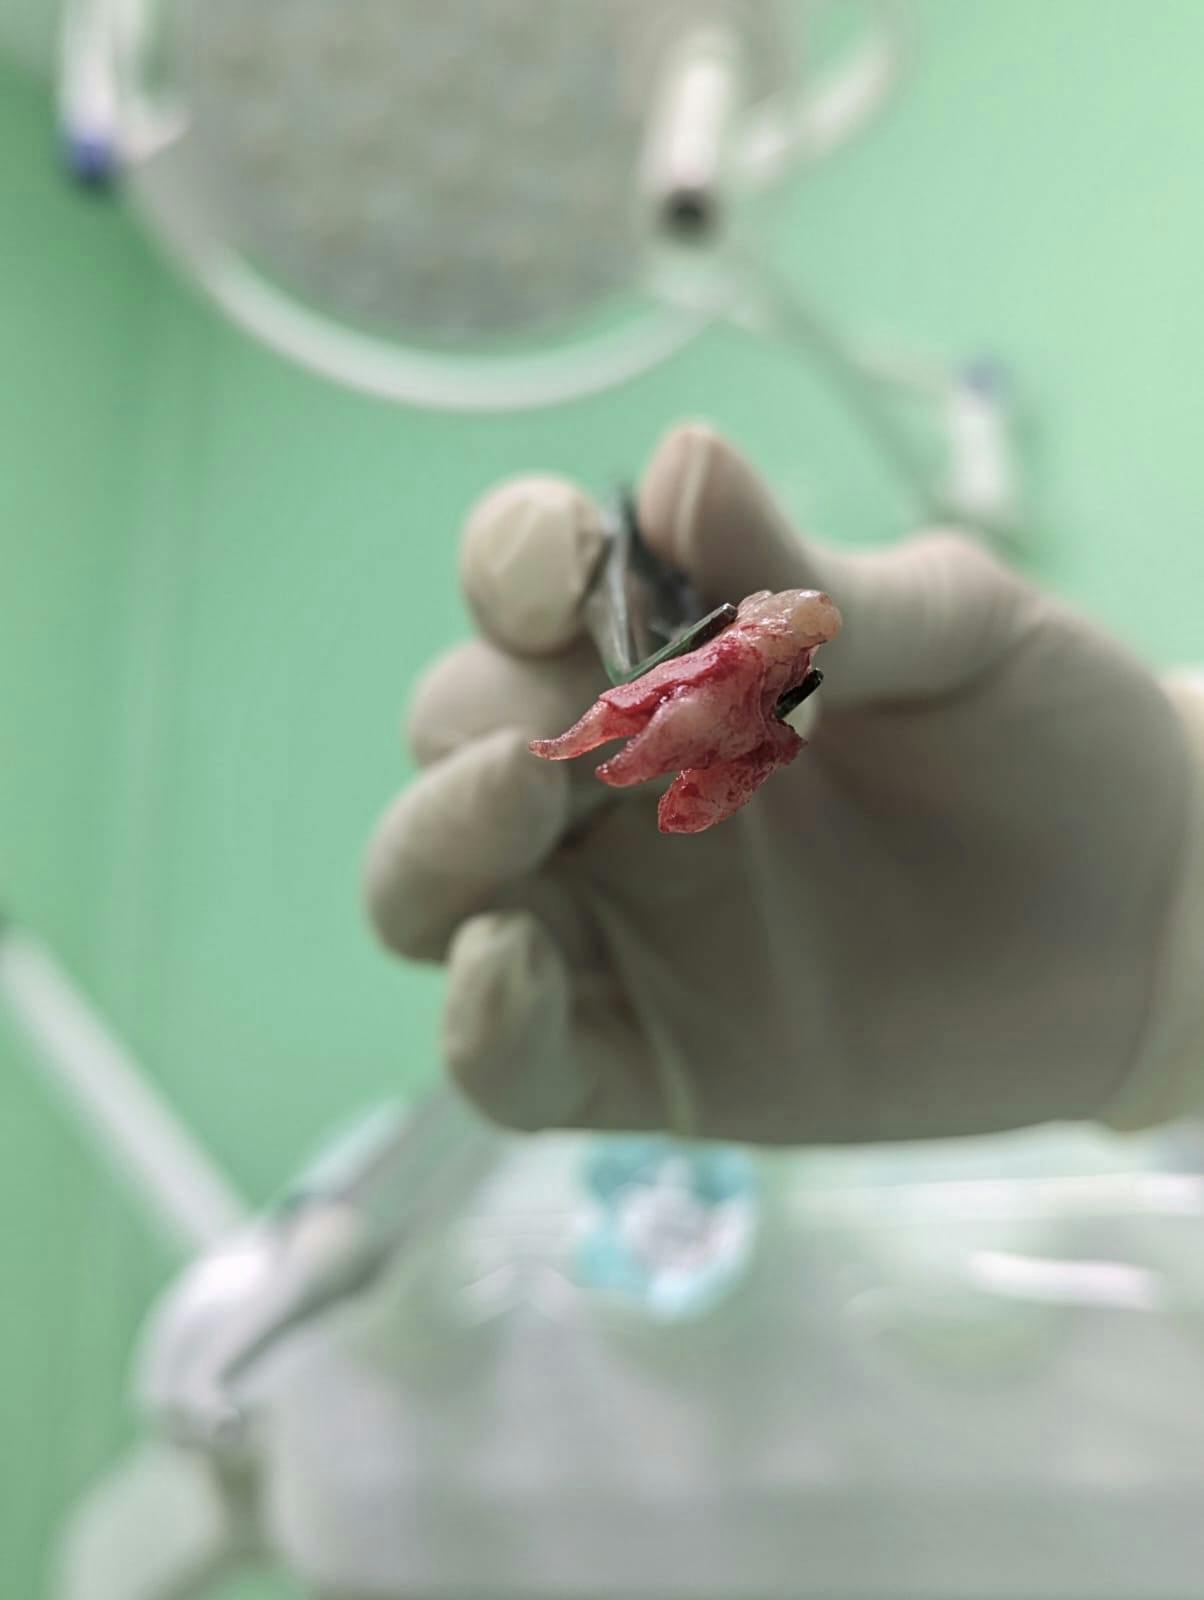 L'estrazione del dente: come prepararsi e comportarsi dopo l'intervento